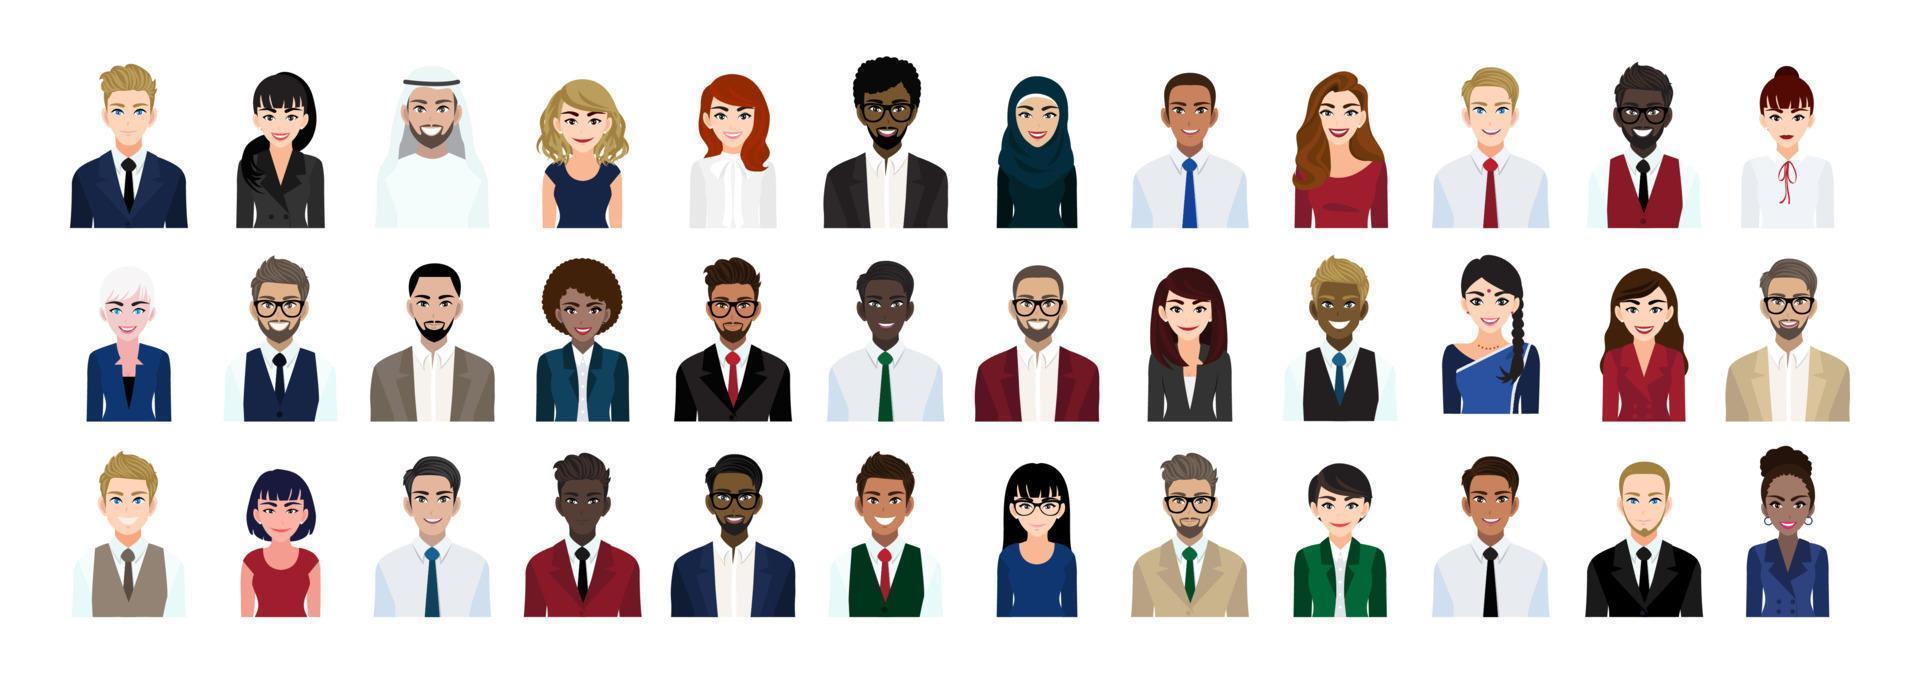 conjunto de coleção de cabeça de personagem de desenho animado de pessoas de negócios. empresários e empresárias em estilo de escritório em fundo branco. ilustração vetorial plana vetor